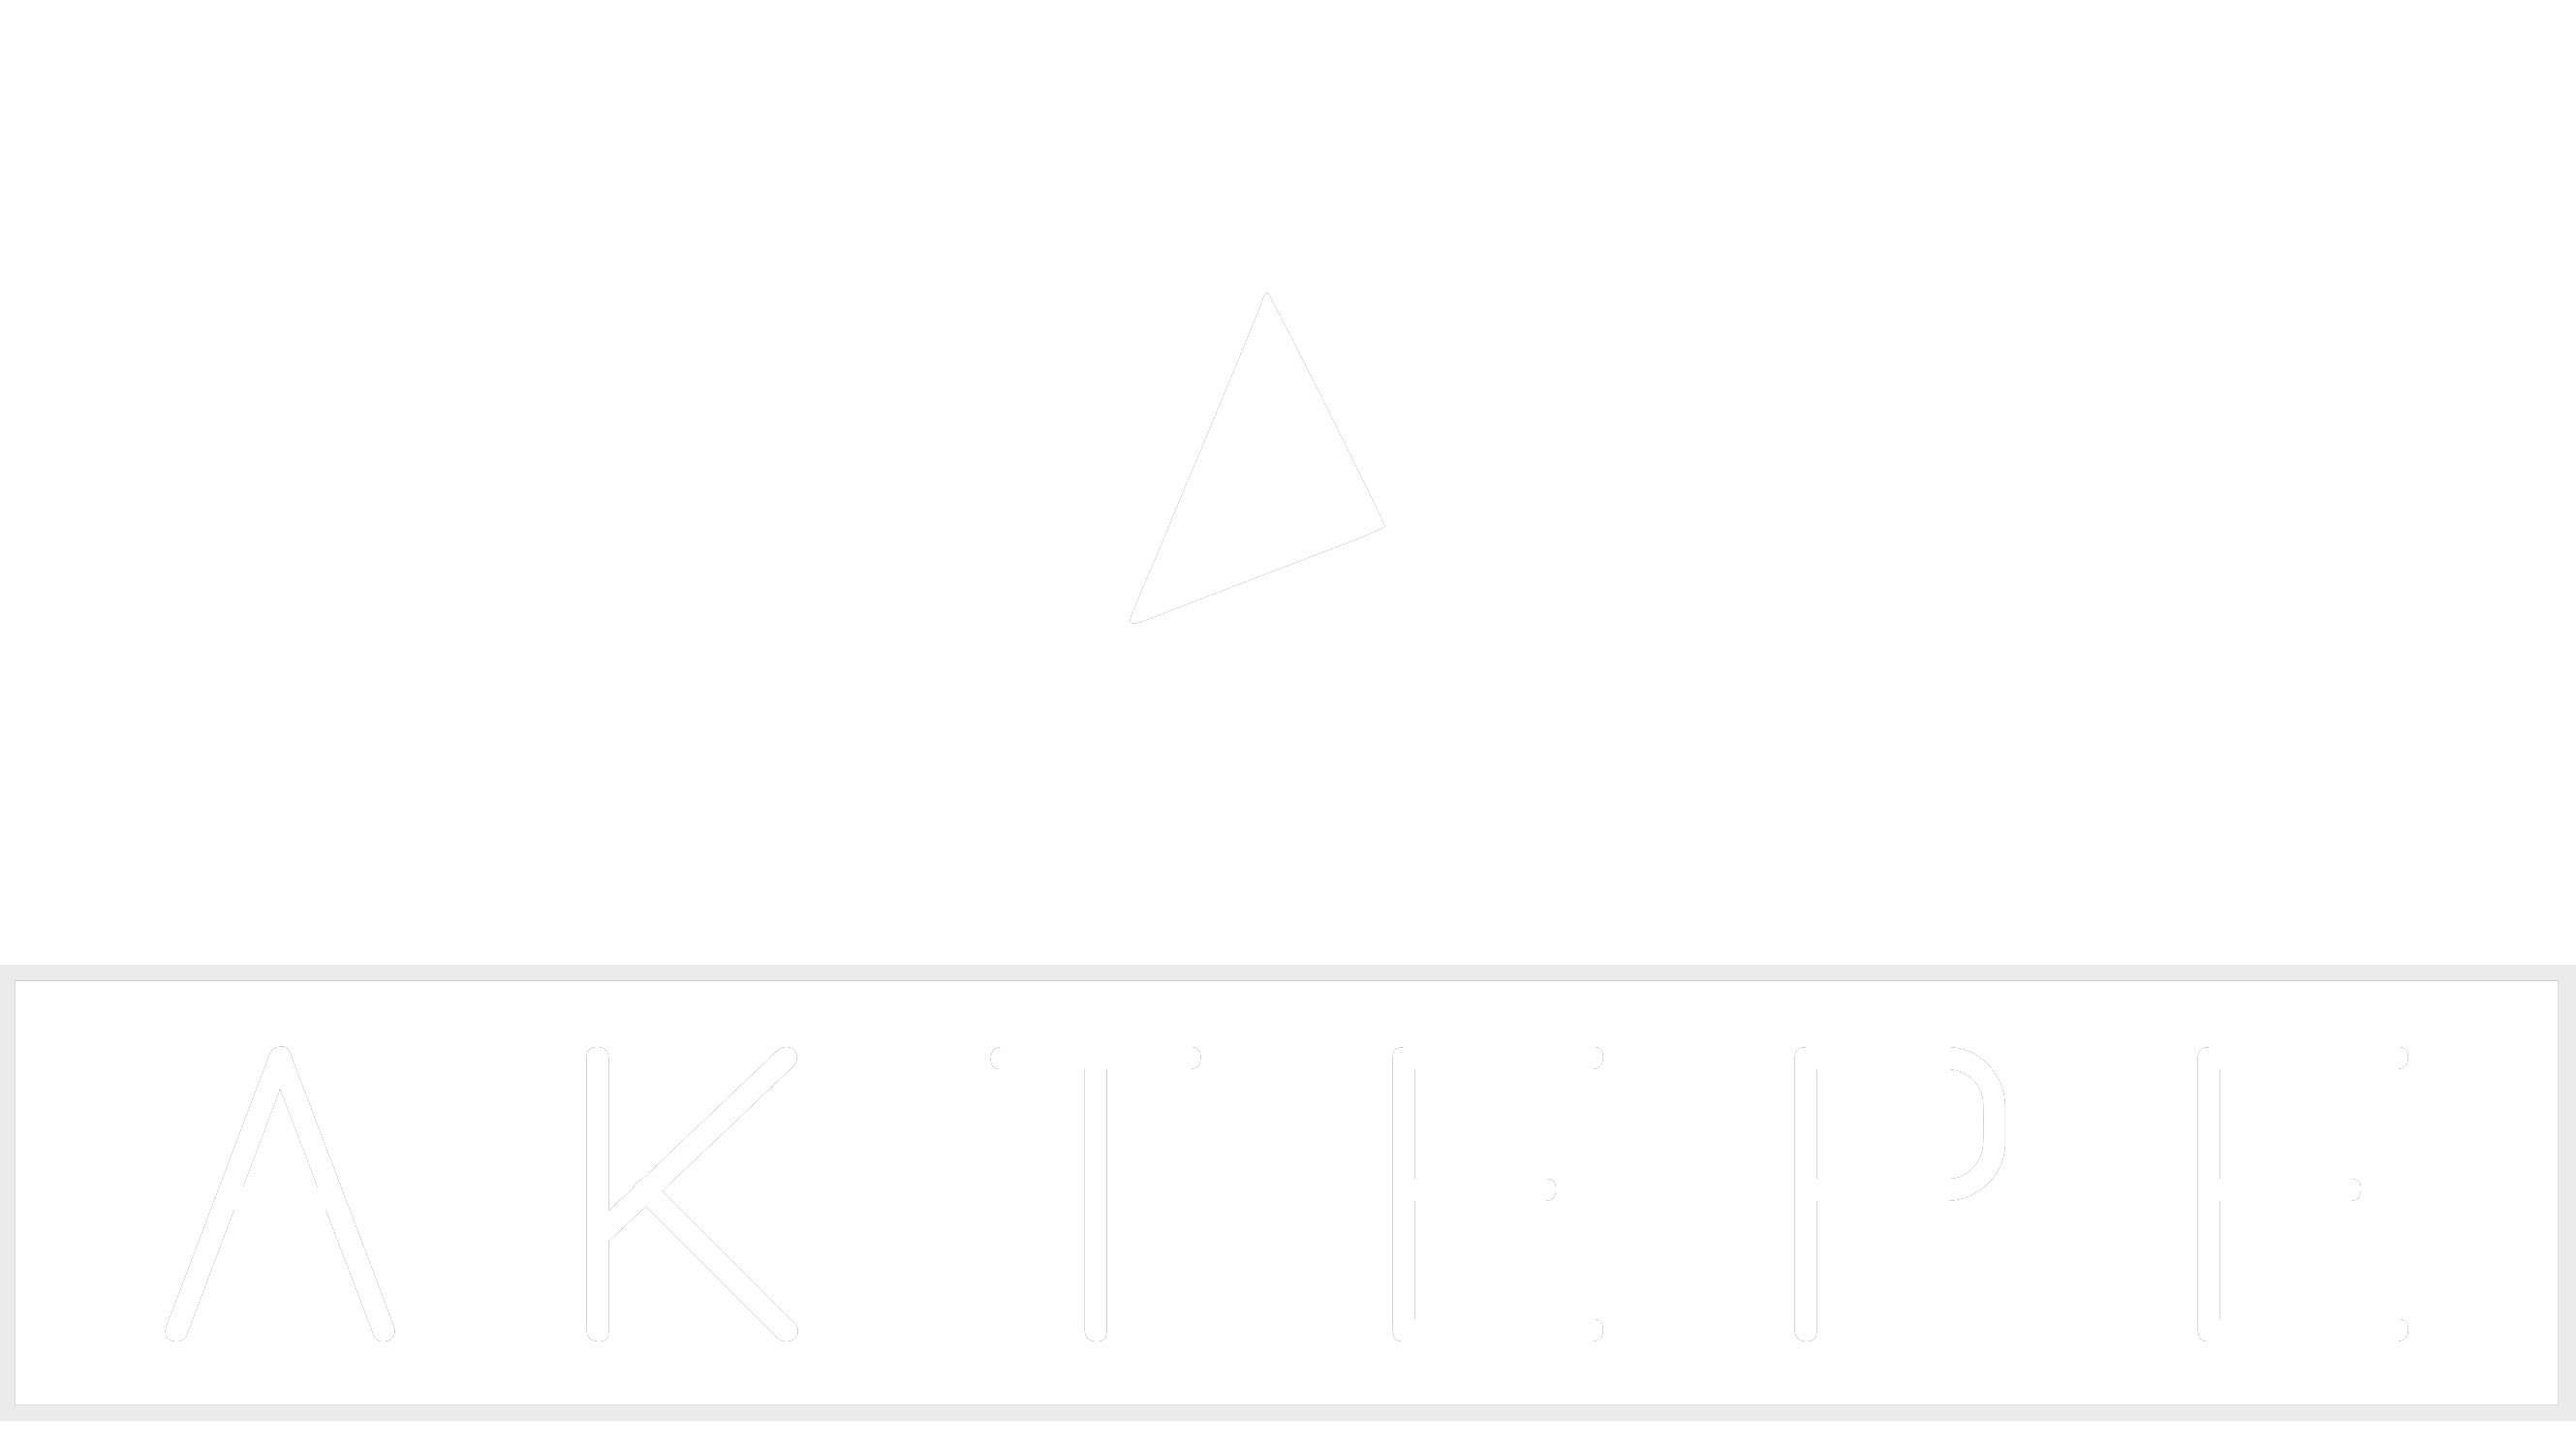 Amarok - Aktepe Shop - Oto Müzik Görüntü Navigasyon Sistemleri ve Teyp Çerçevesi Satış Merkezi